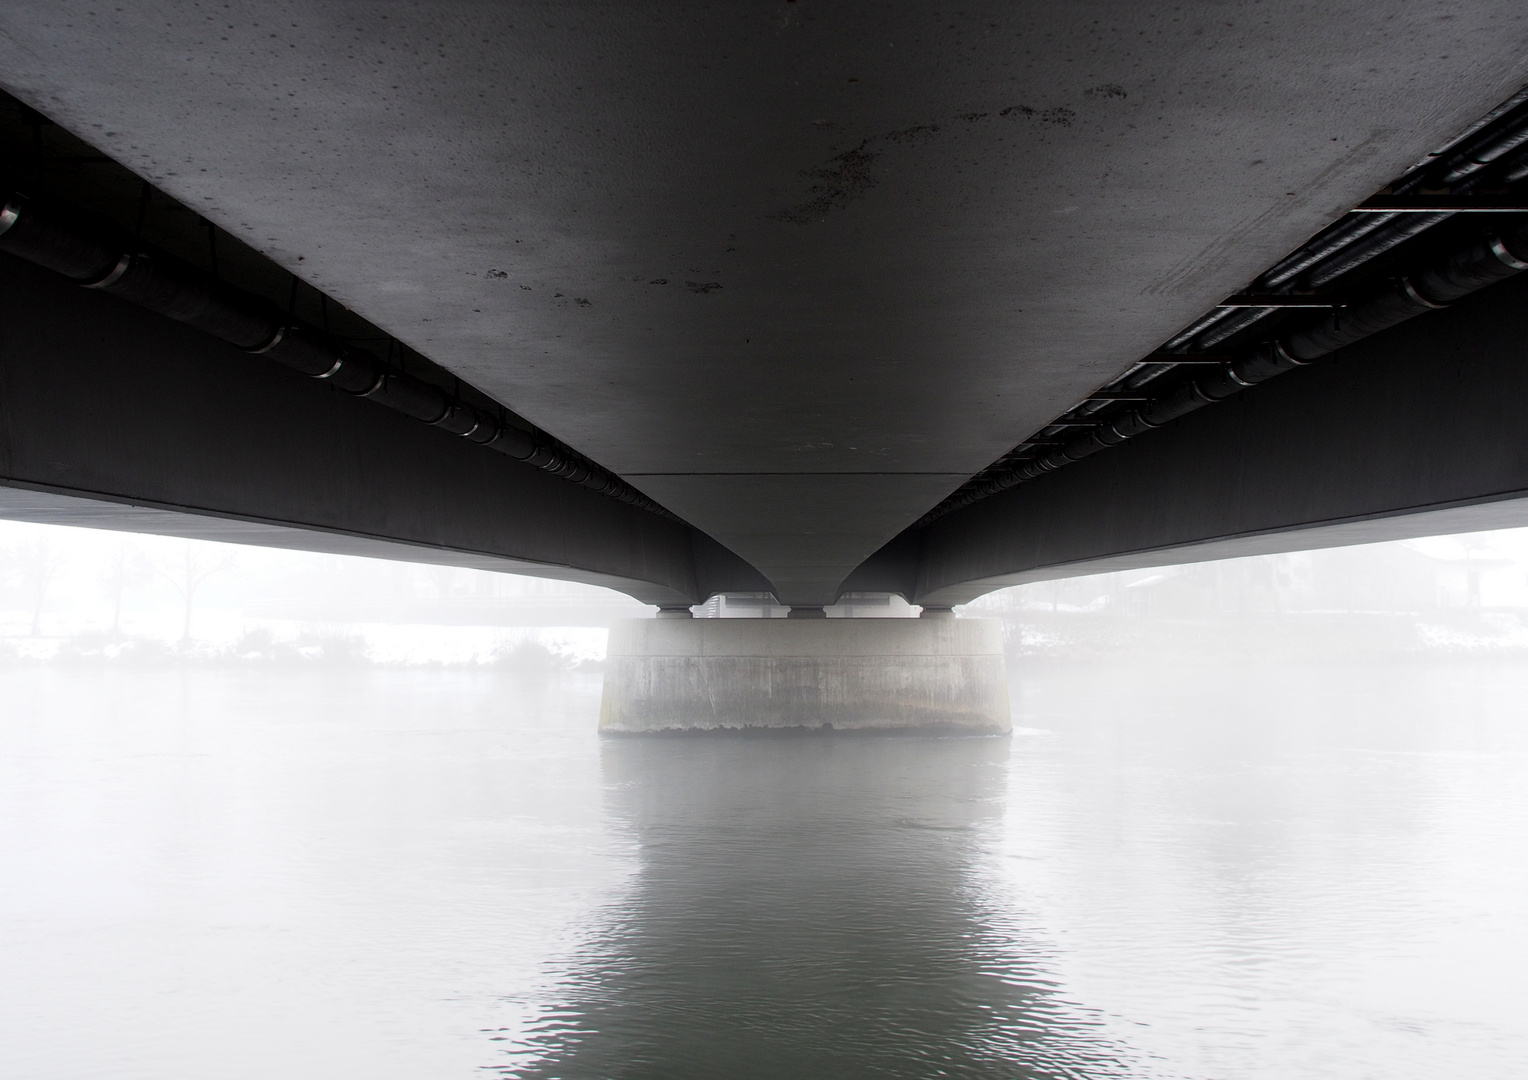 Donaubrücke